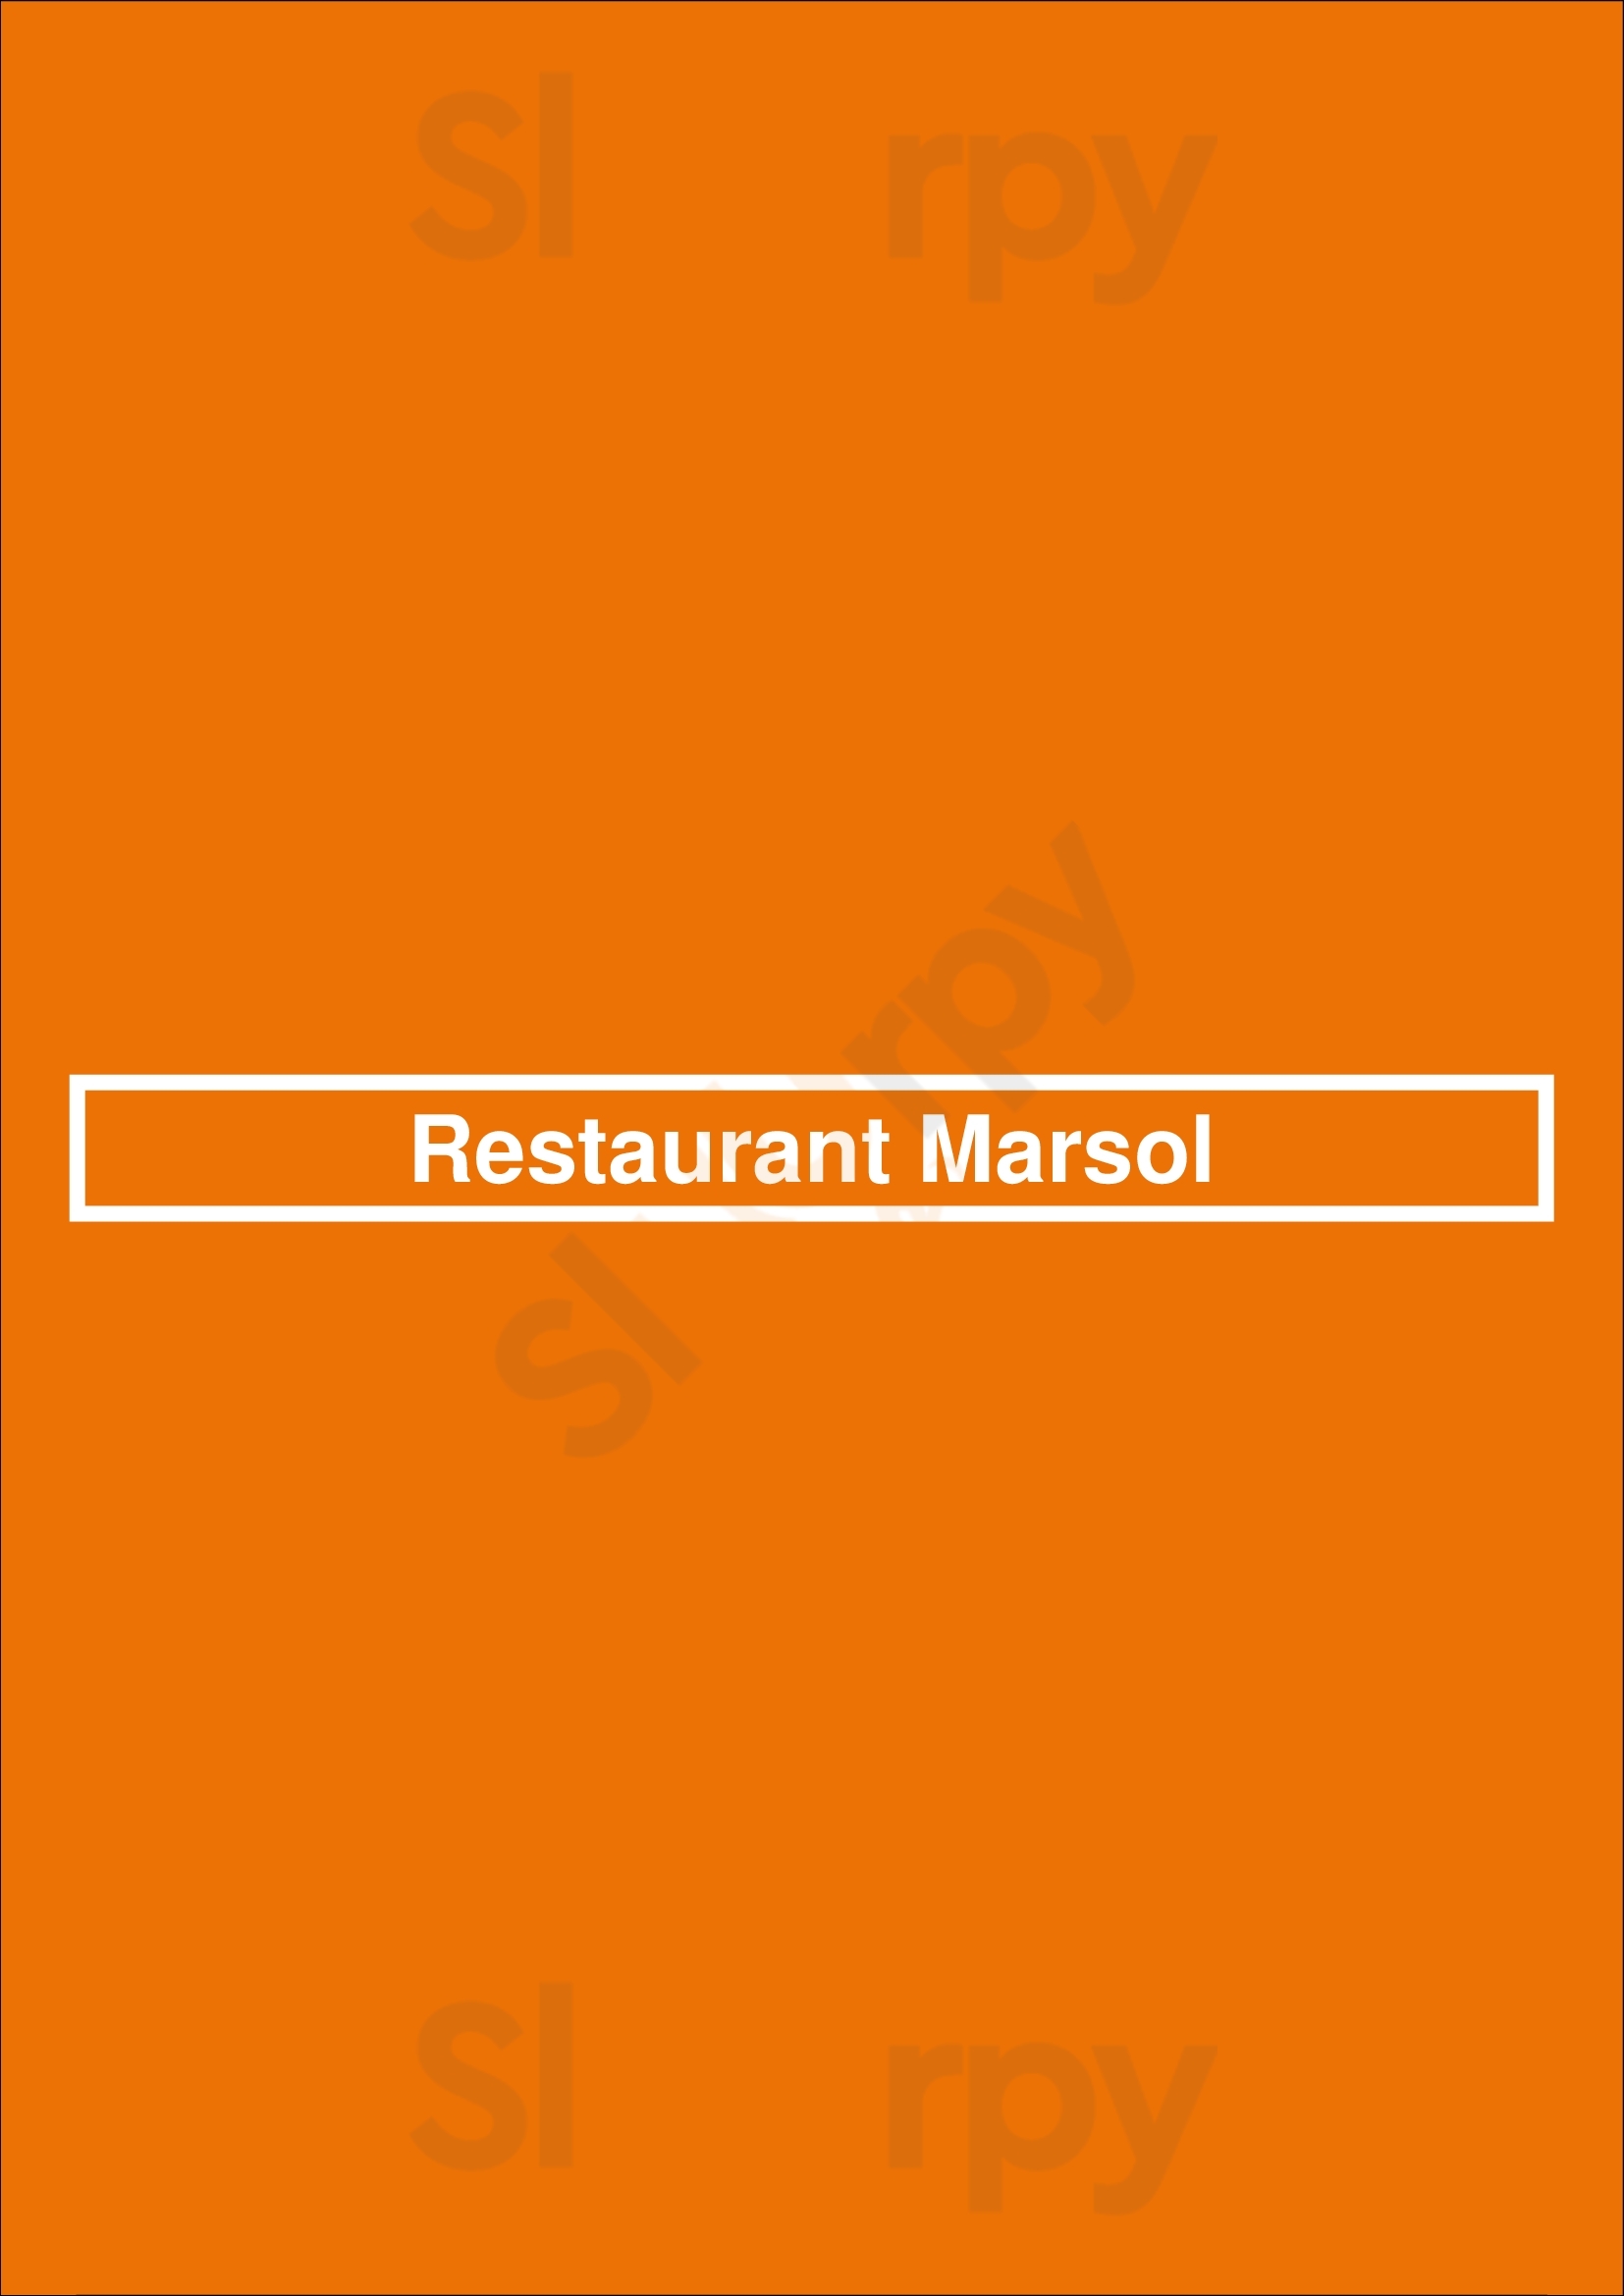 Restaurant Marsol Faro Menu - 1